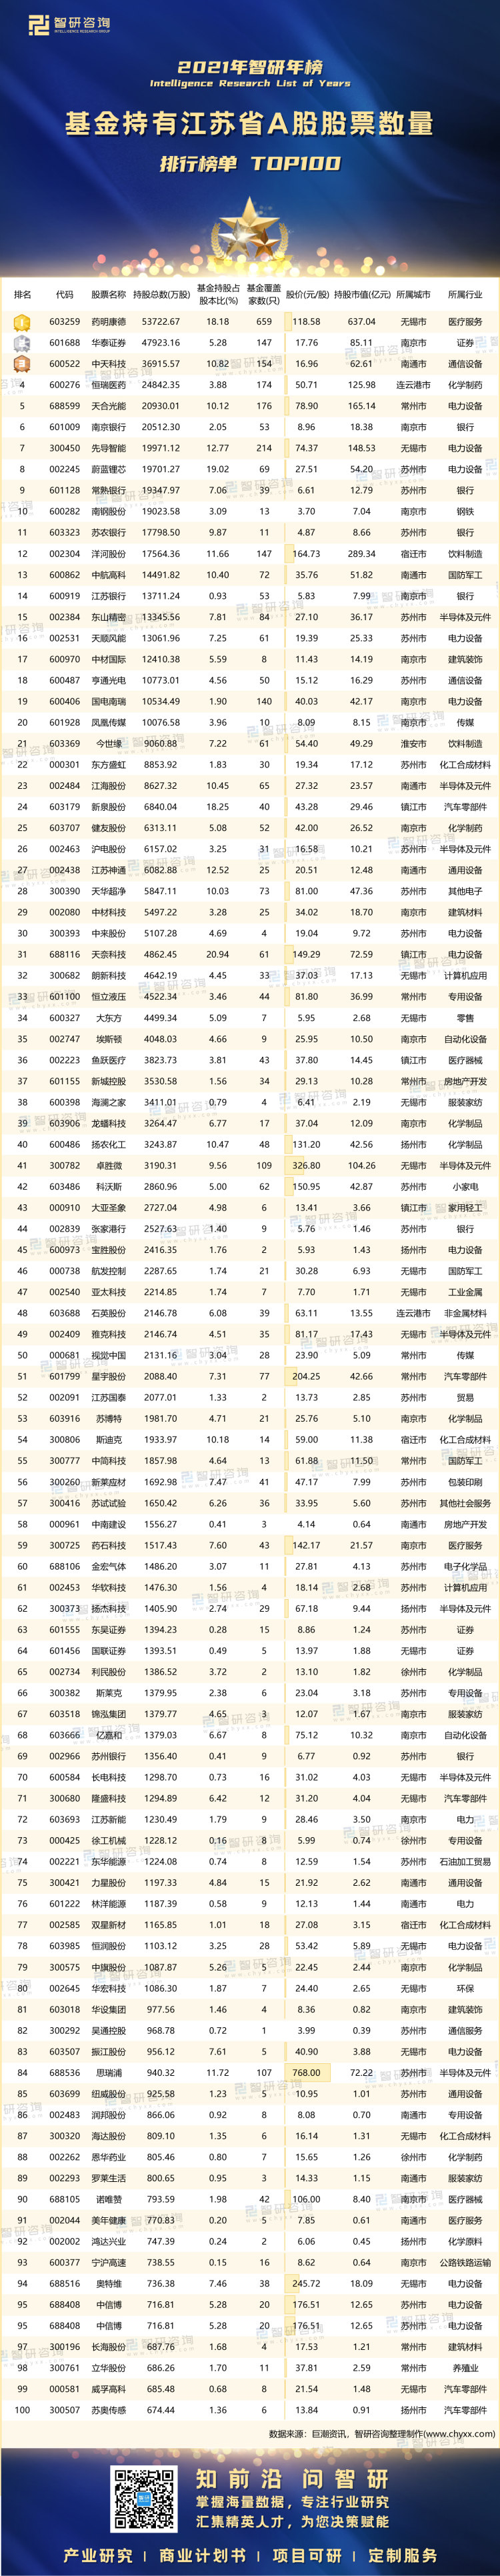 0327：江苏基金持股数量-带水印带二维码（王钦）_画板 1